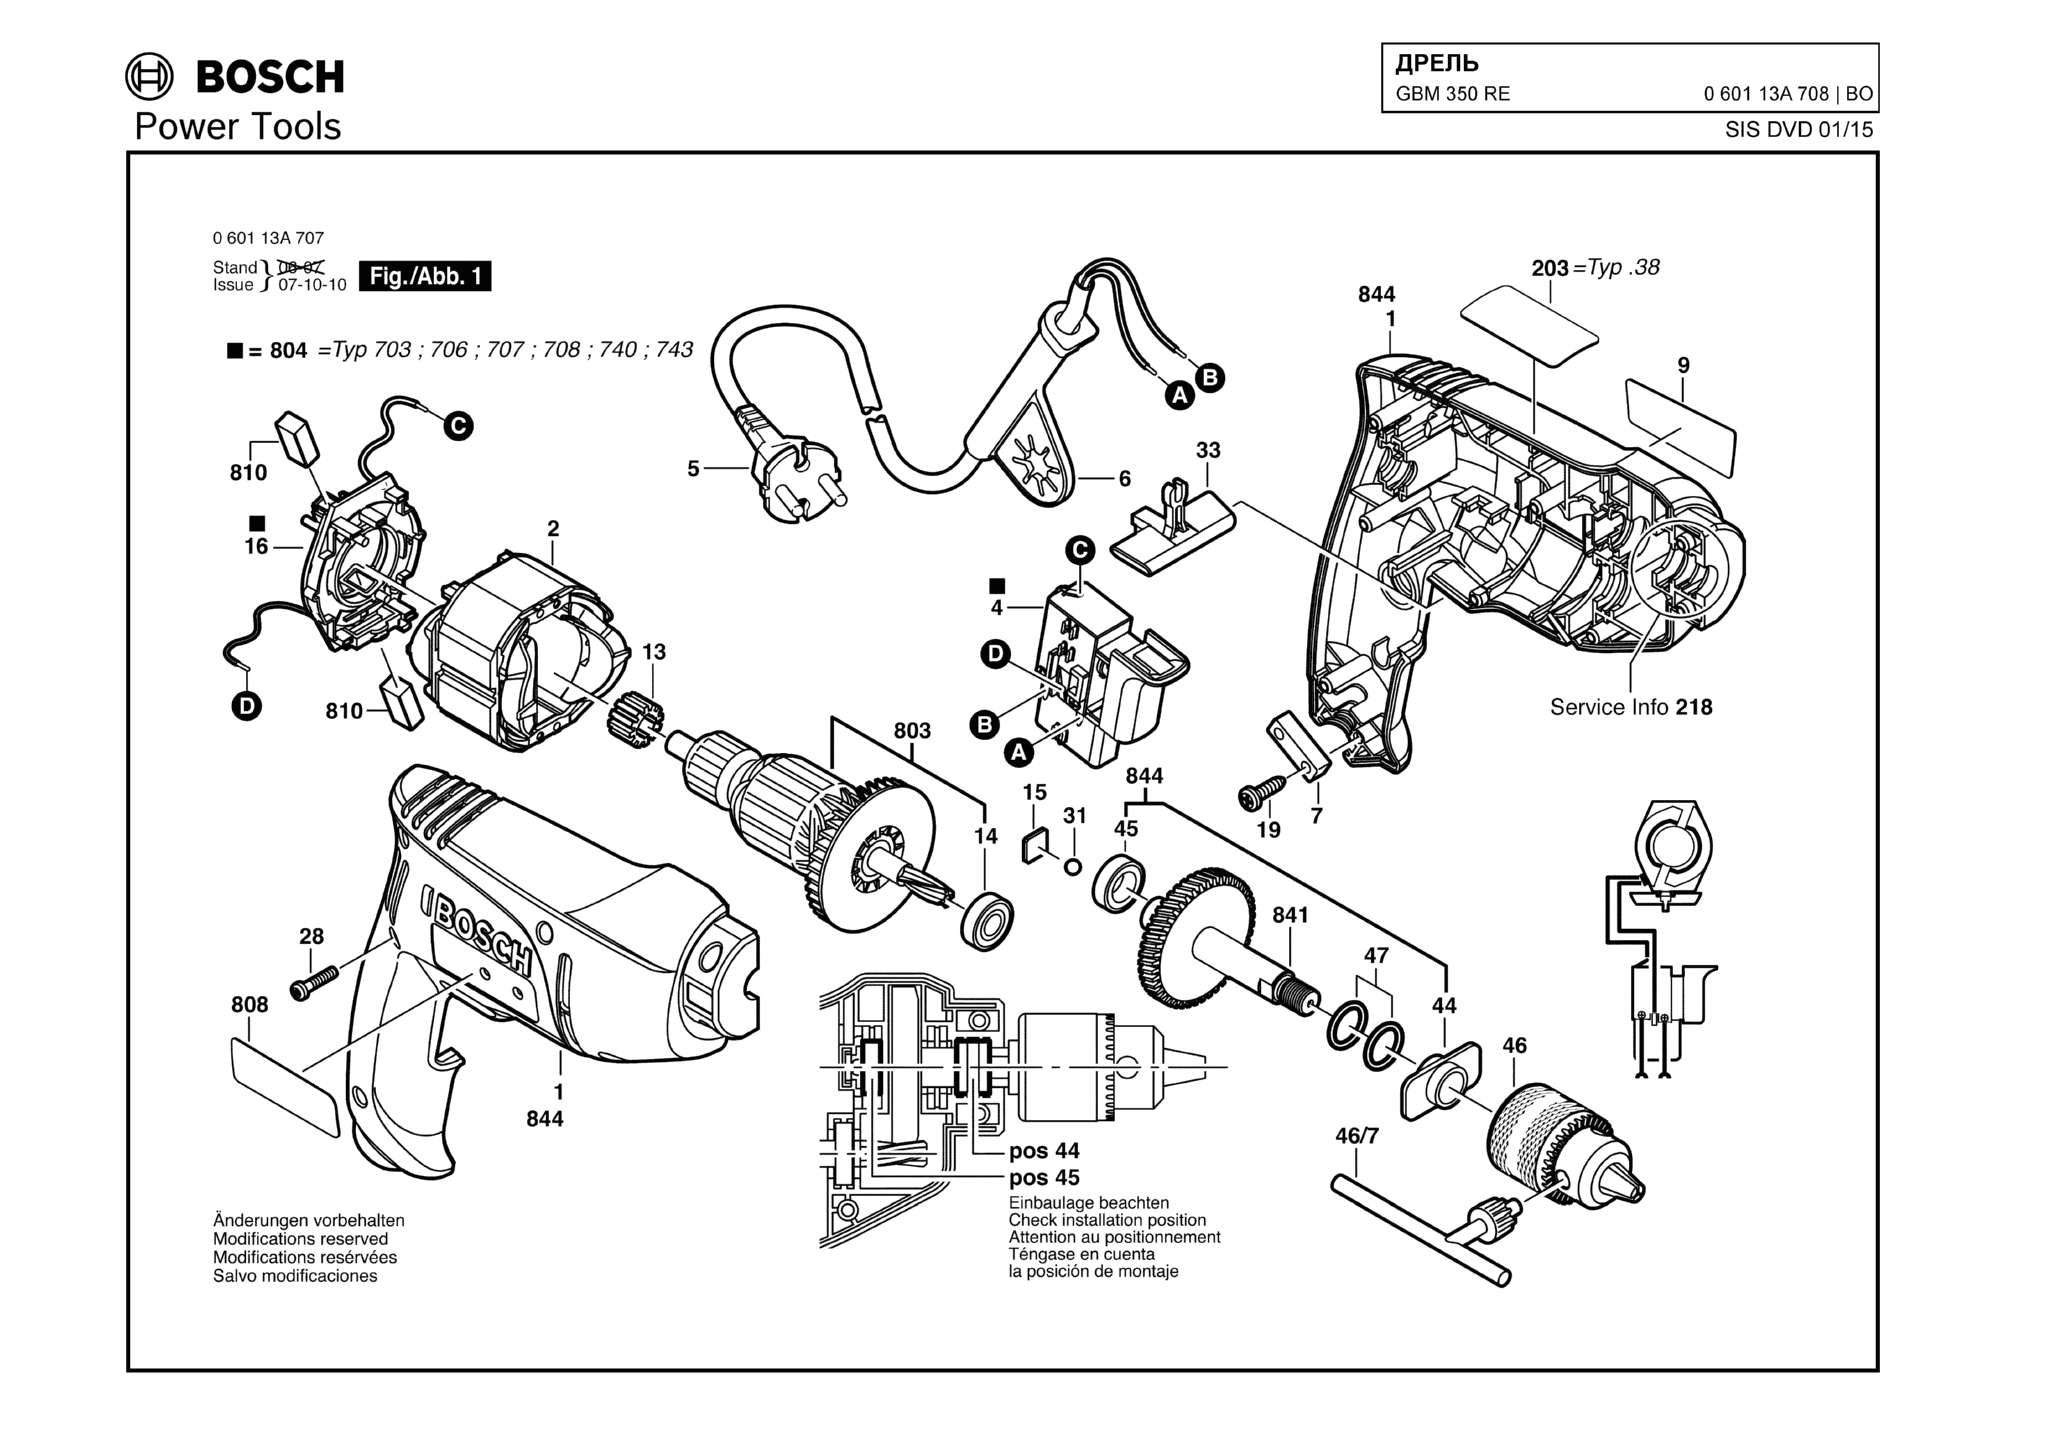 Запчасти, схема и деталировка Bosch GBM 350 RE (ТИП 060113A708)